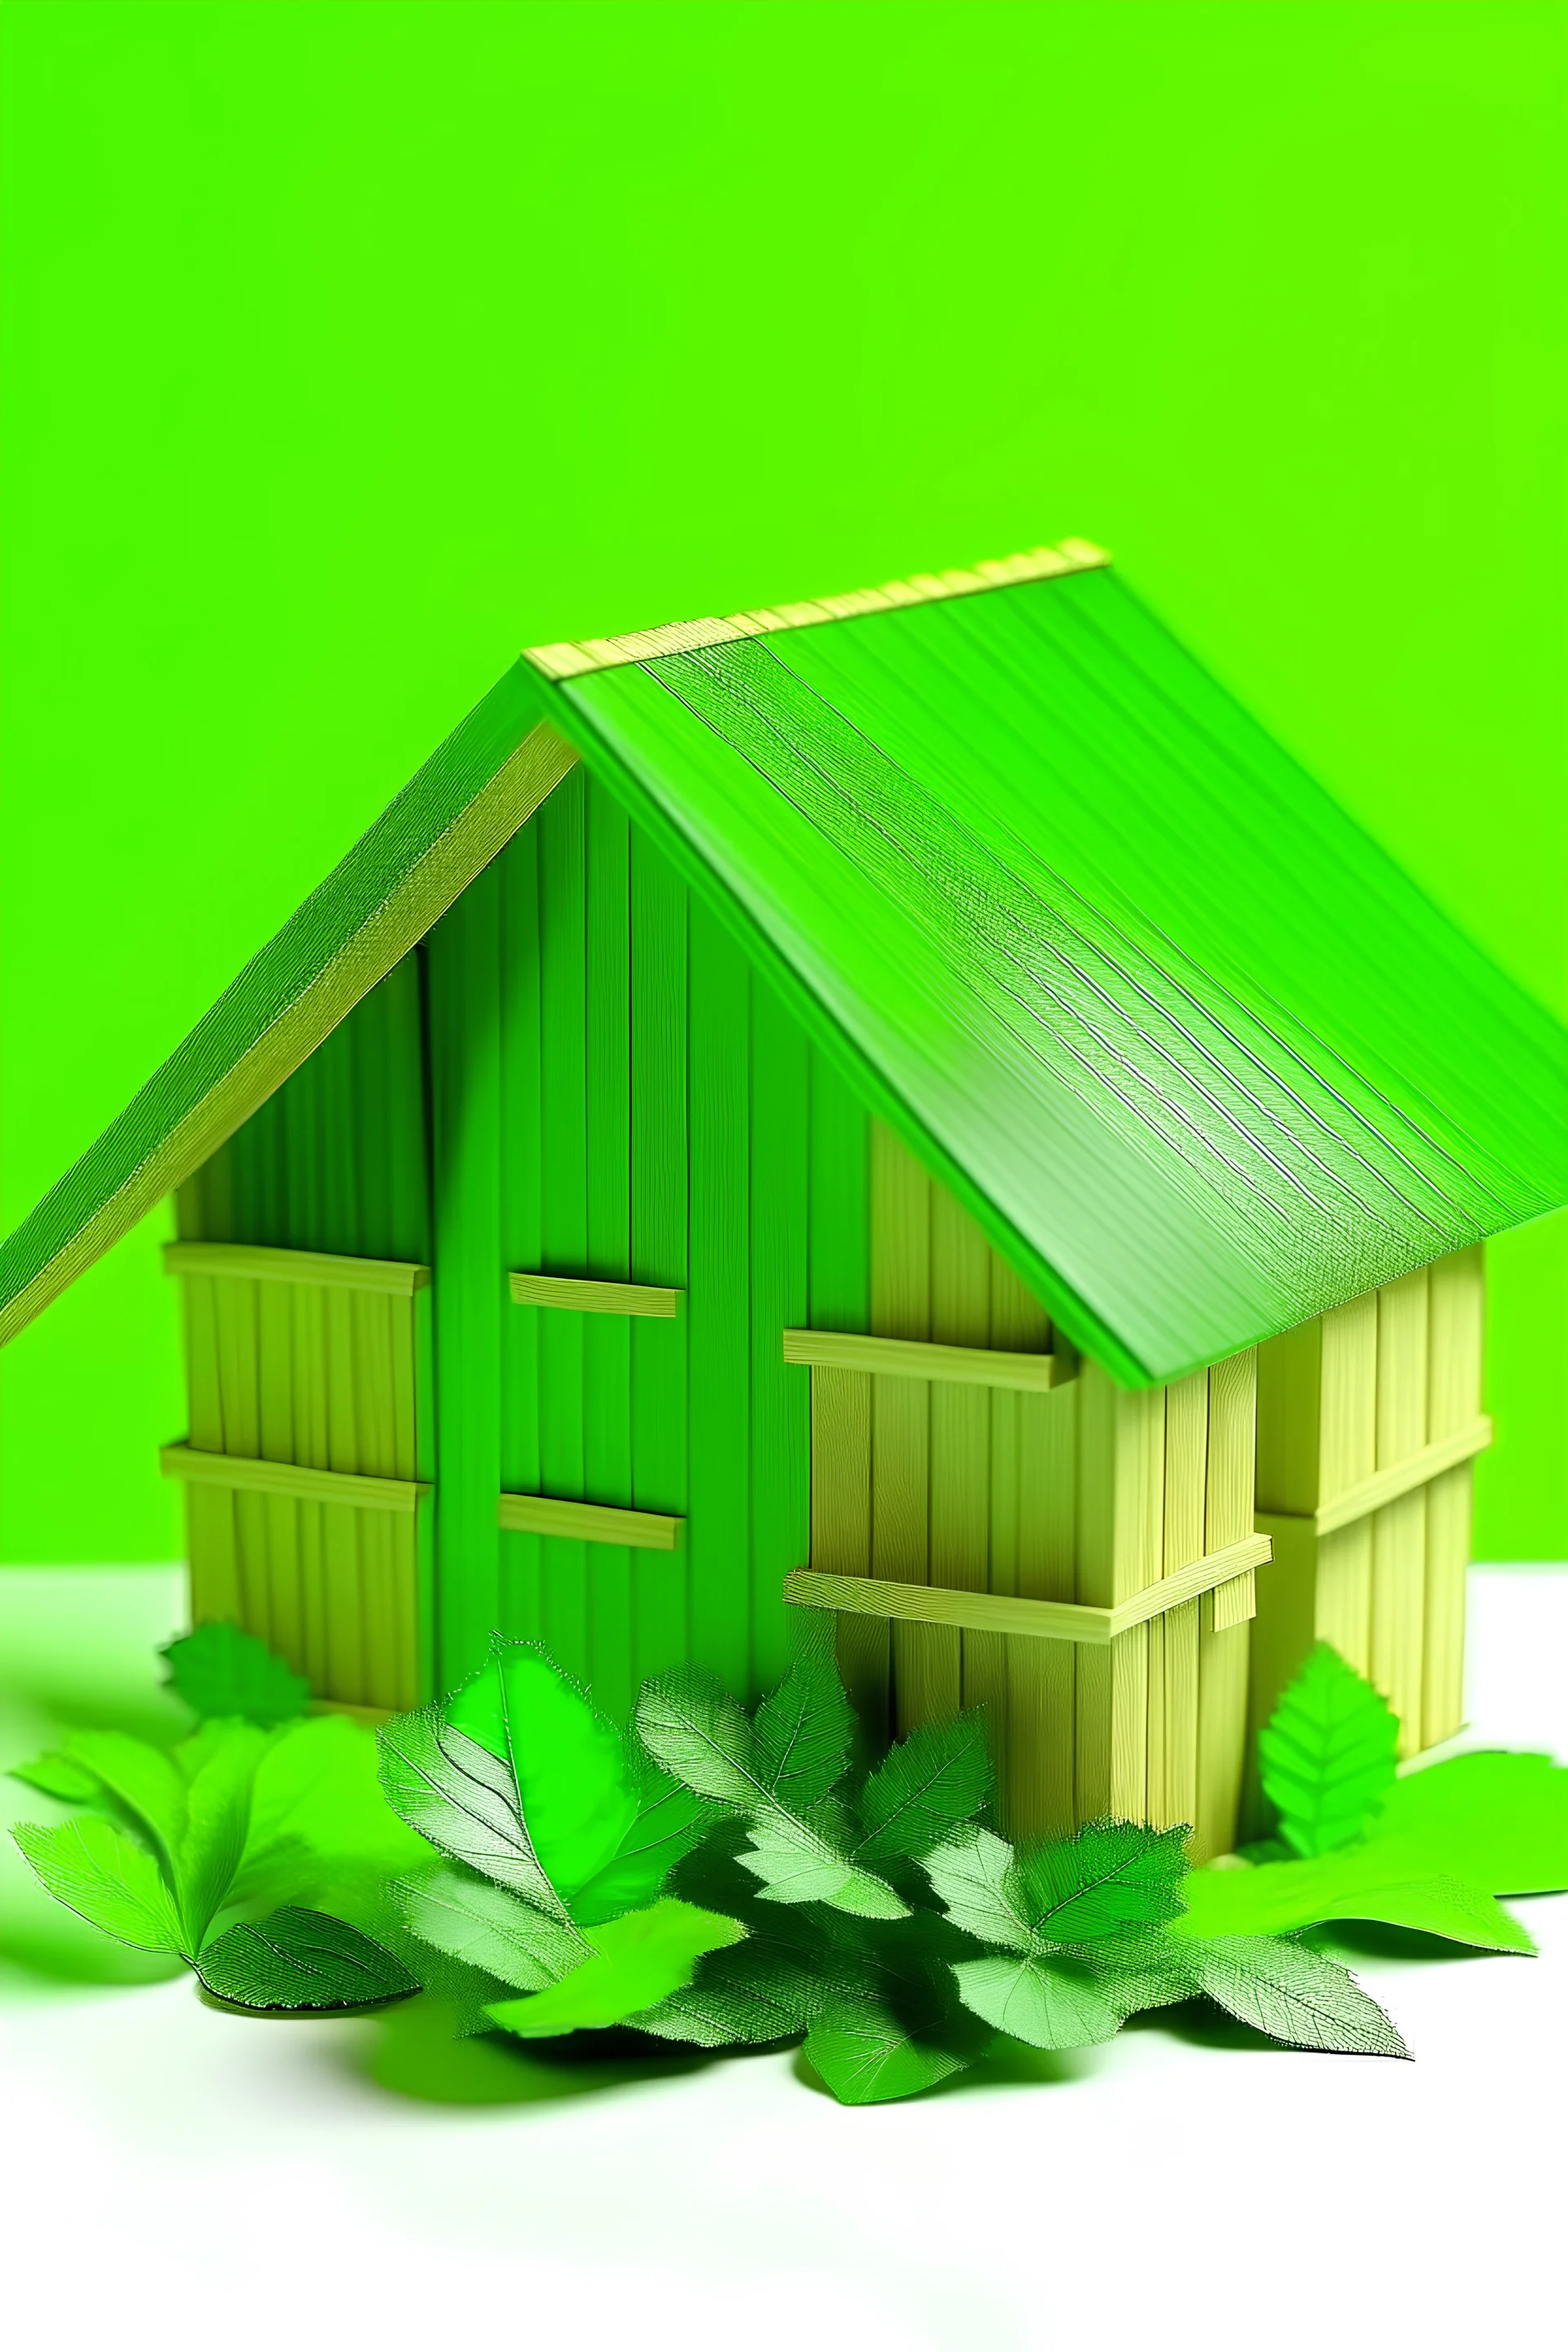 בית ירוק על רקע אלפחורס